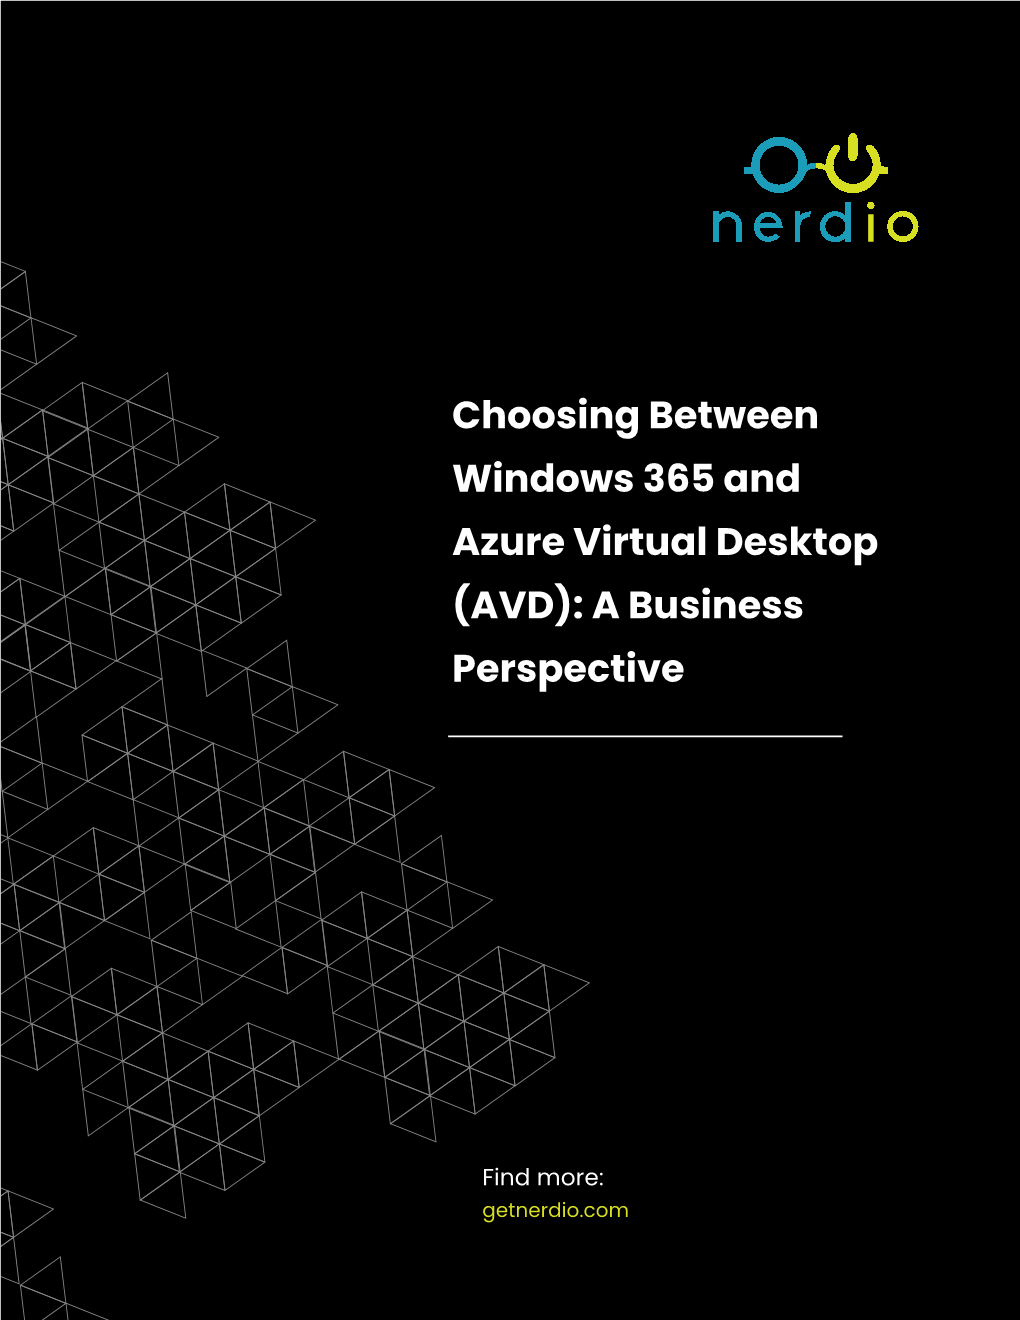 Choosing Between Windows 365 and Azure Virtual Desktop (AVD): a Business Perspective